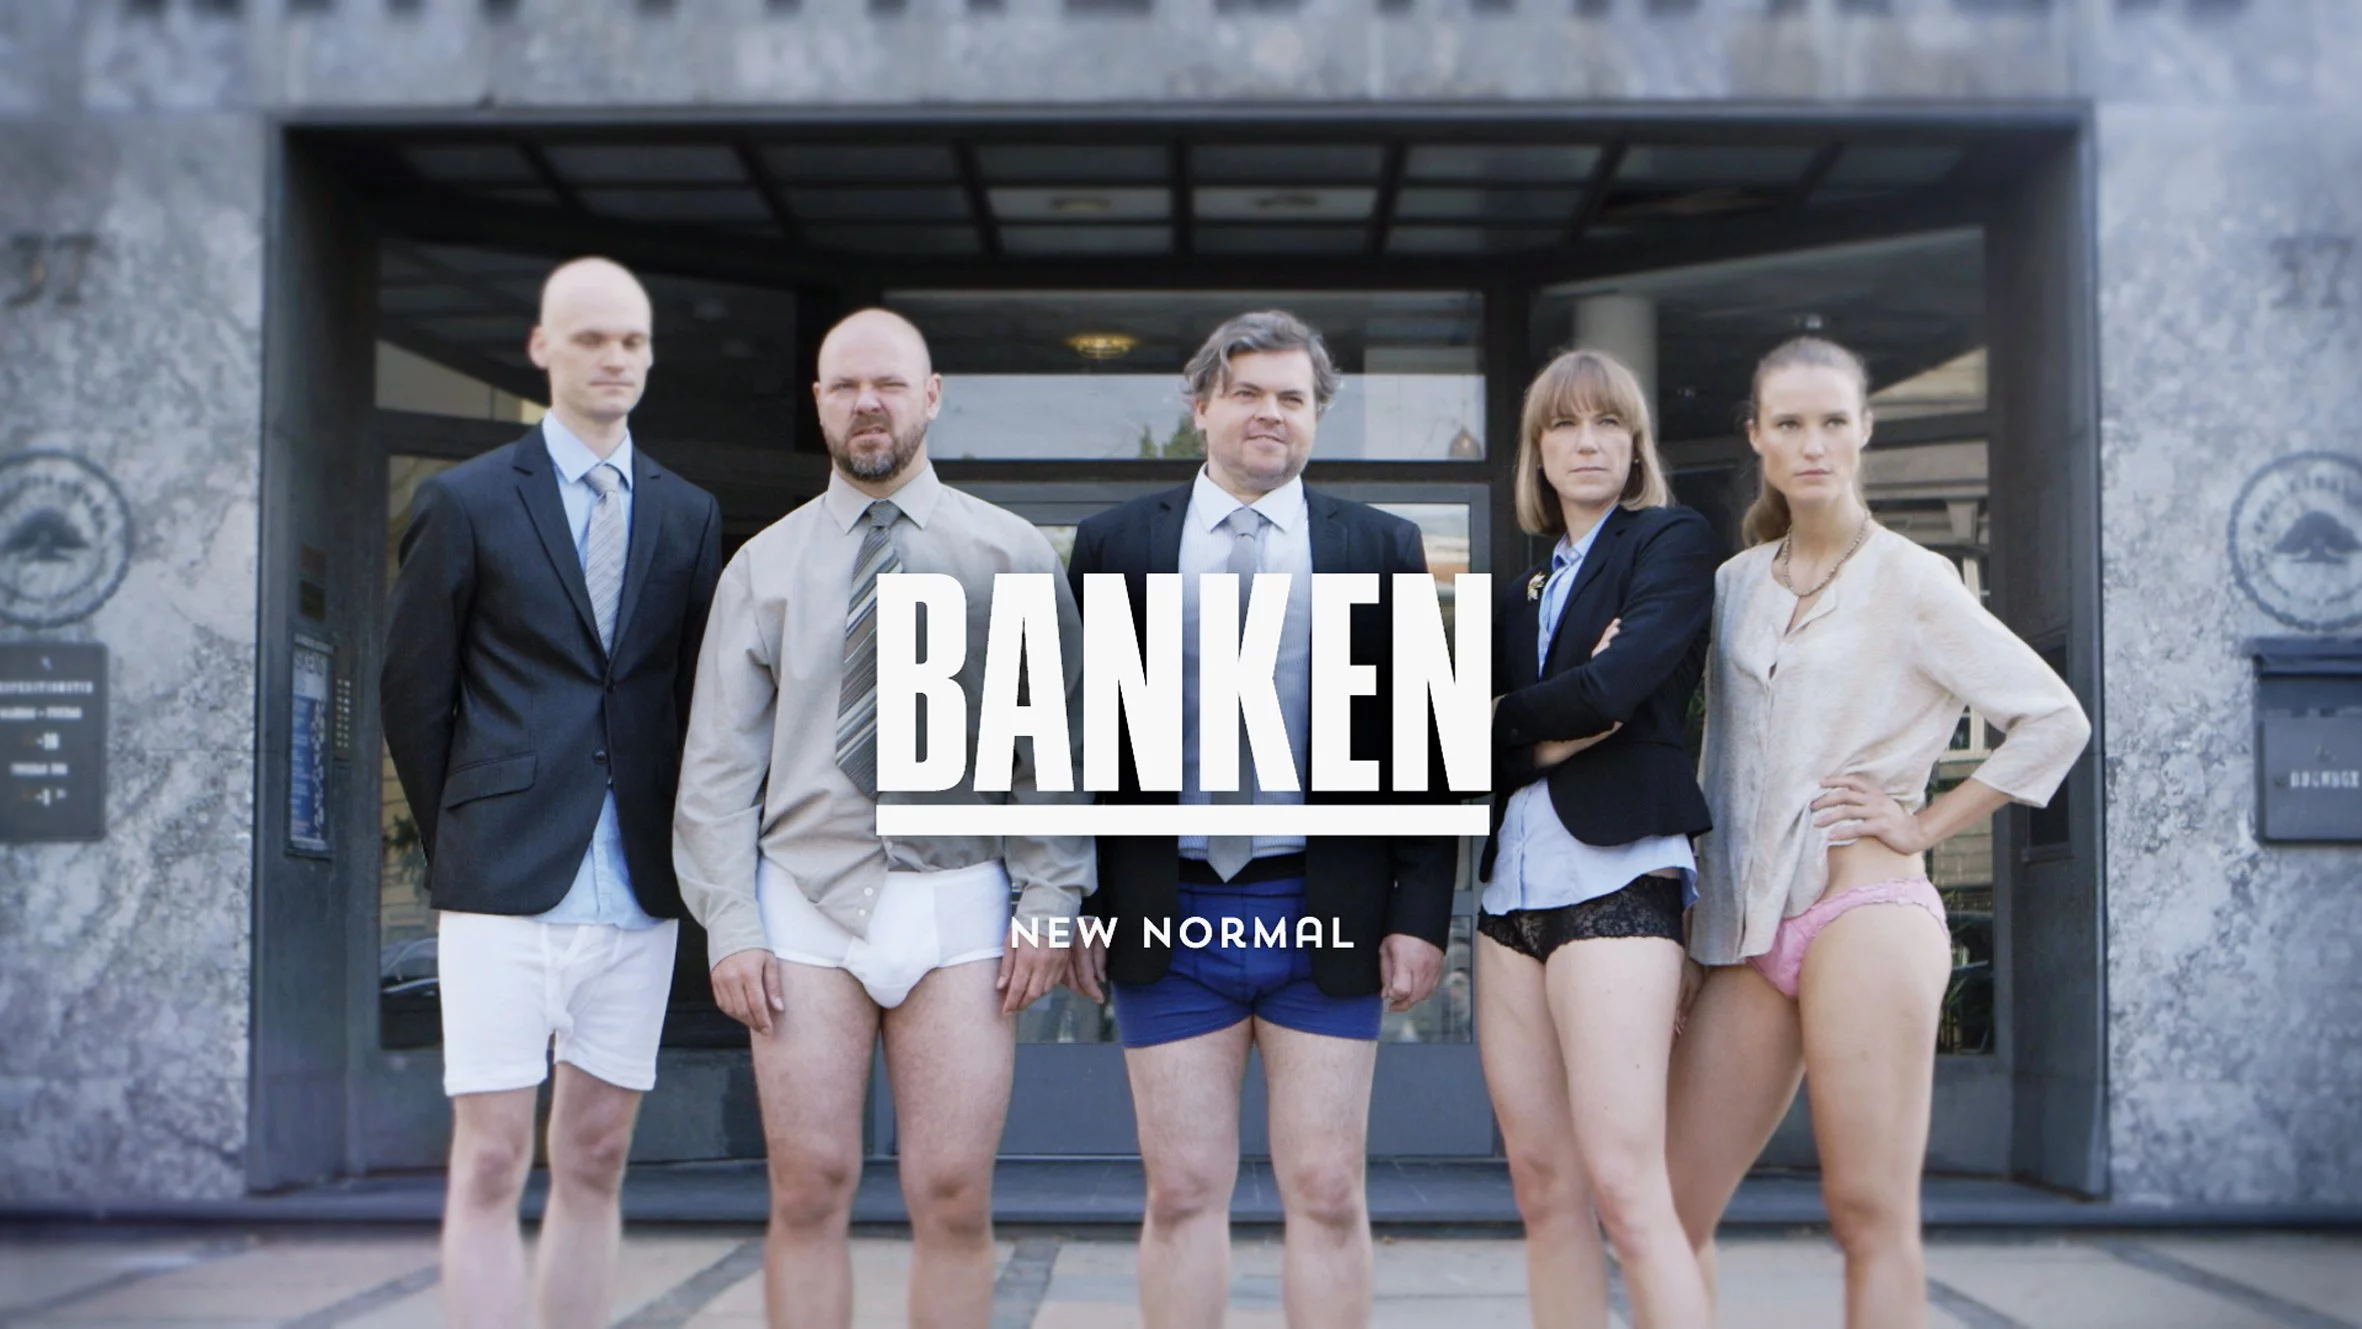 Banken - New normal DR2